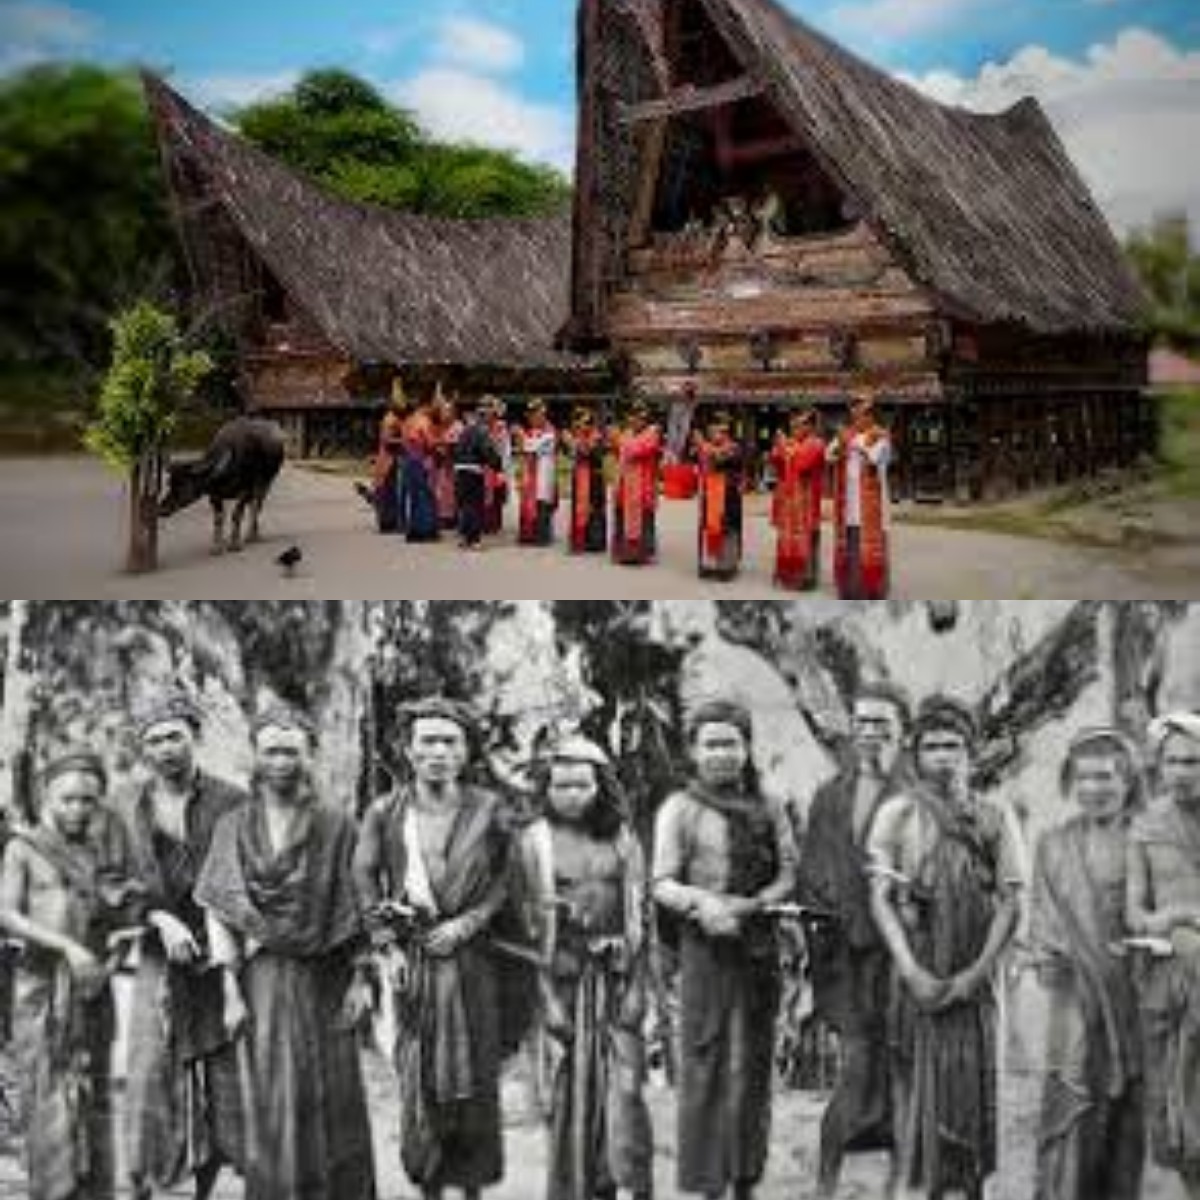 Mengulik Sejarah Hingga Kebudayaan Suku Batak 